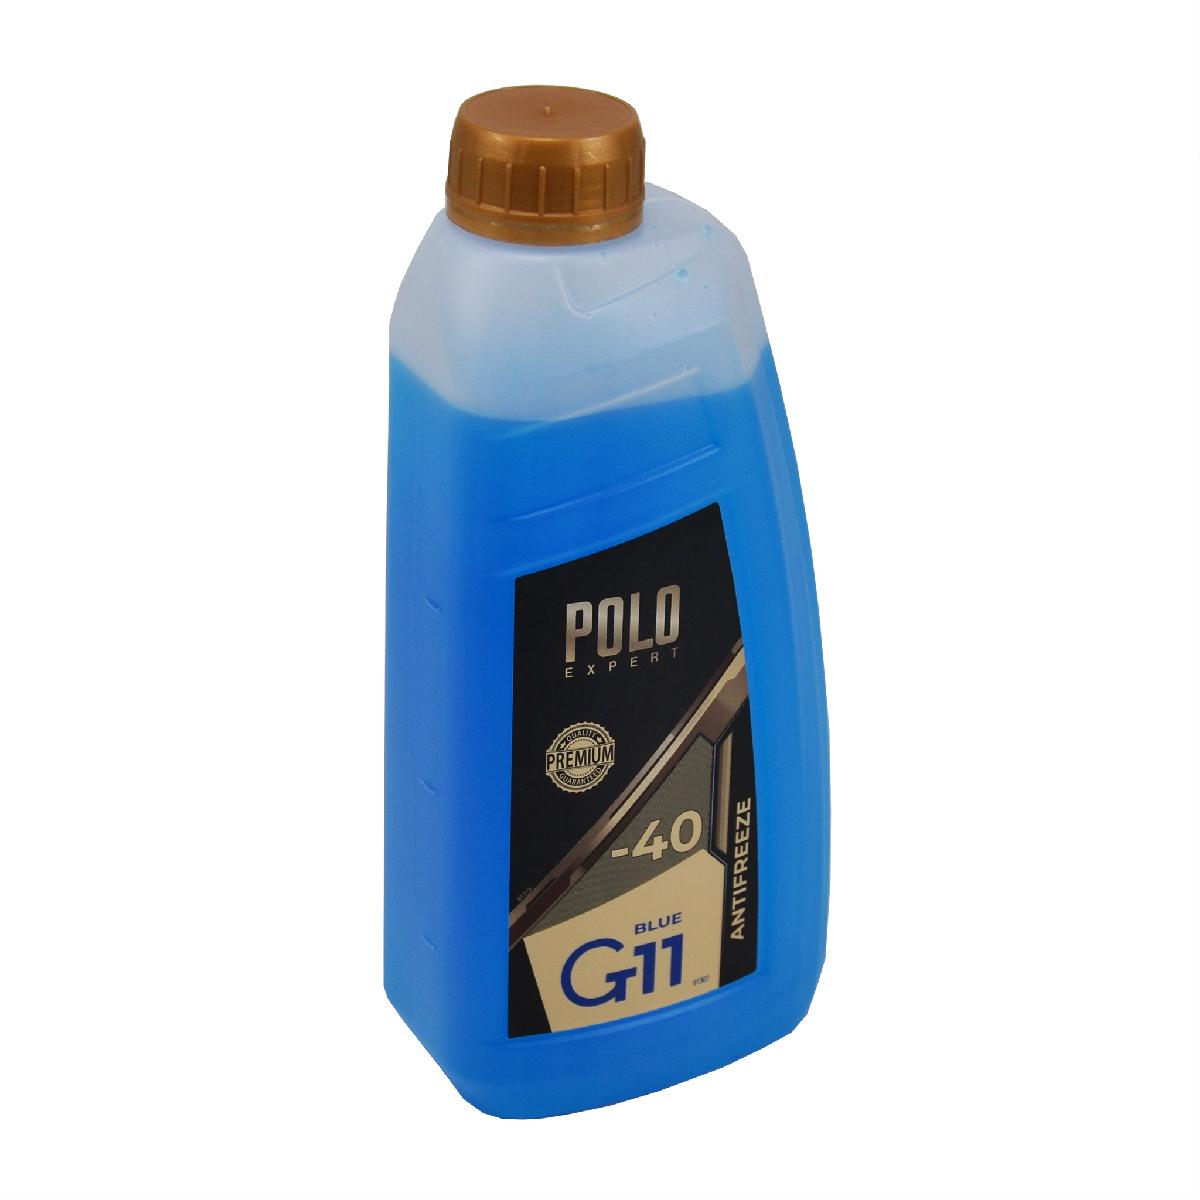 Тосол антифриз (охолоджуюча рідина) 1л синій -40 G-11 Premium Polo Expert